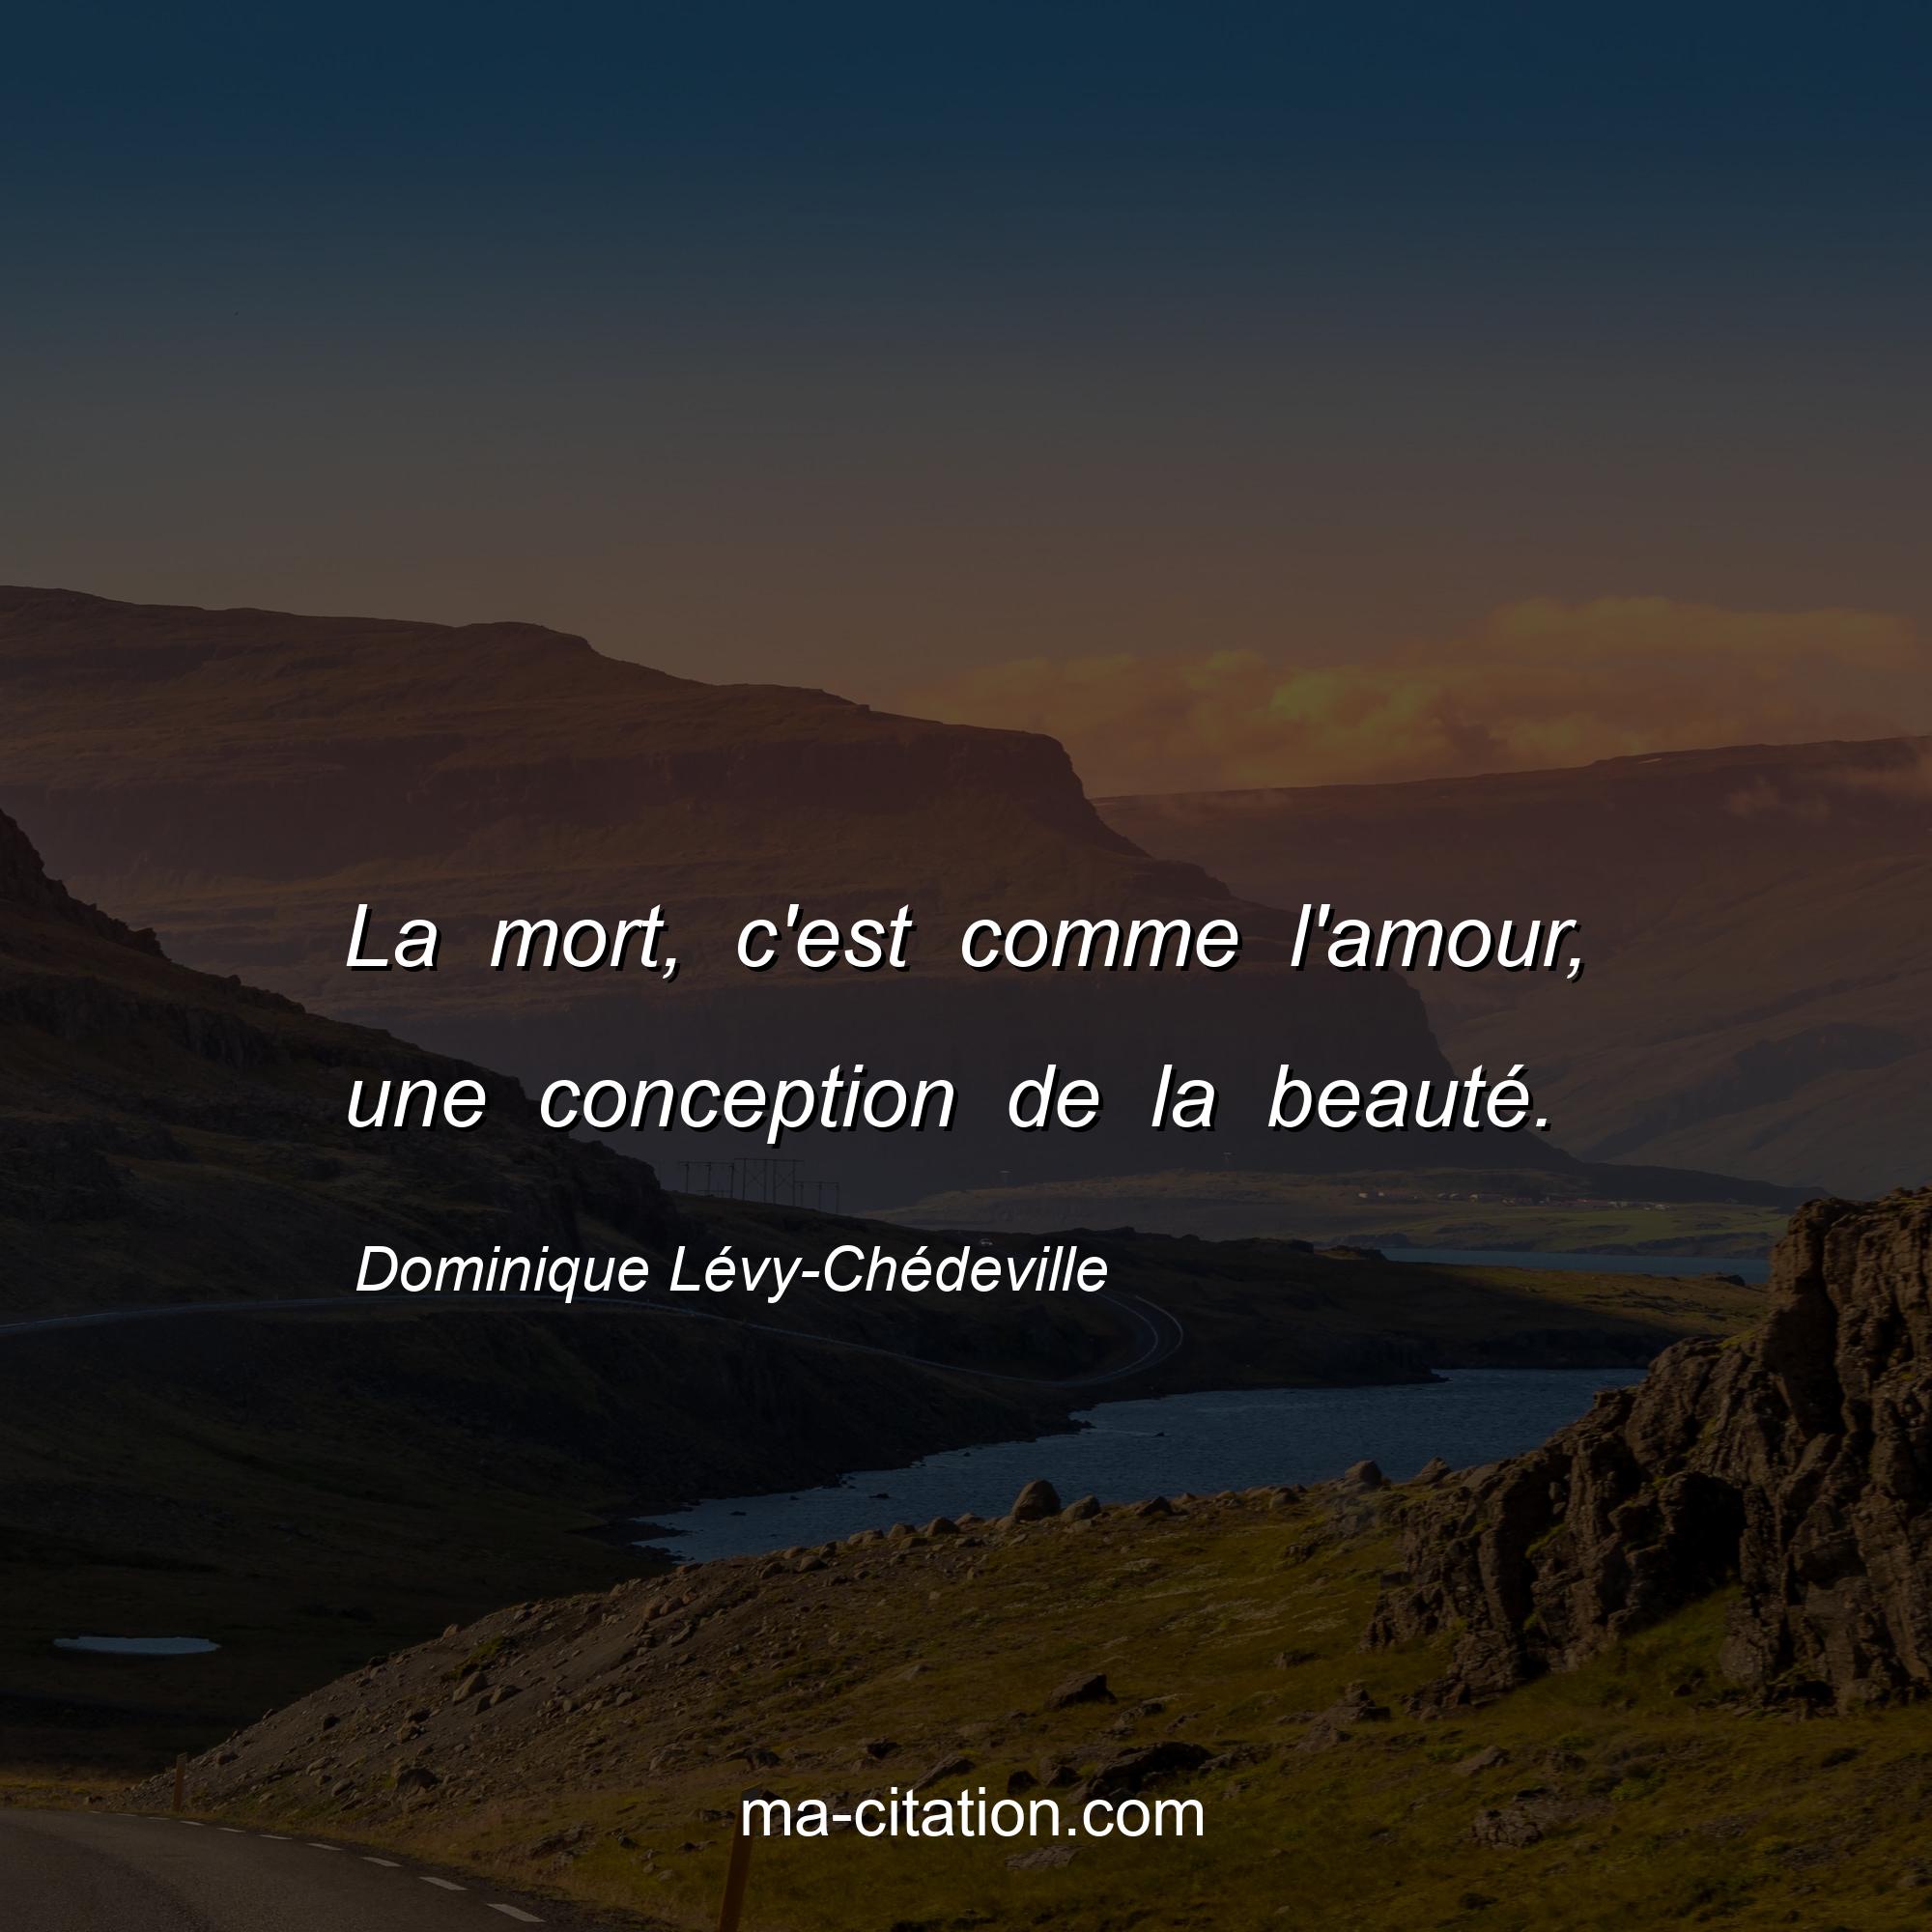 Dominique Lévy-Chédeville : La mort, c'est comme l'amour, une conception de la beauté.